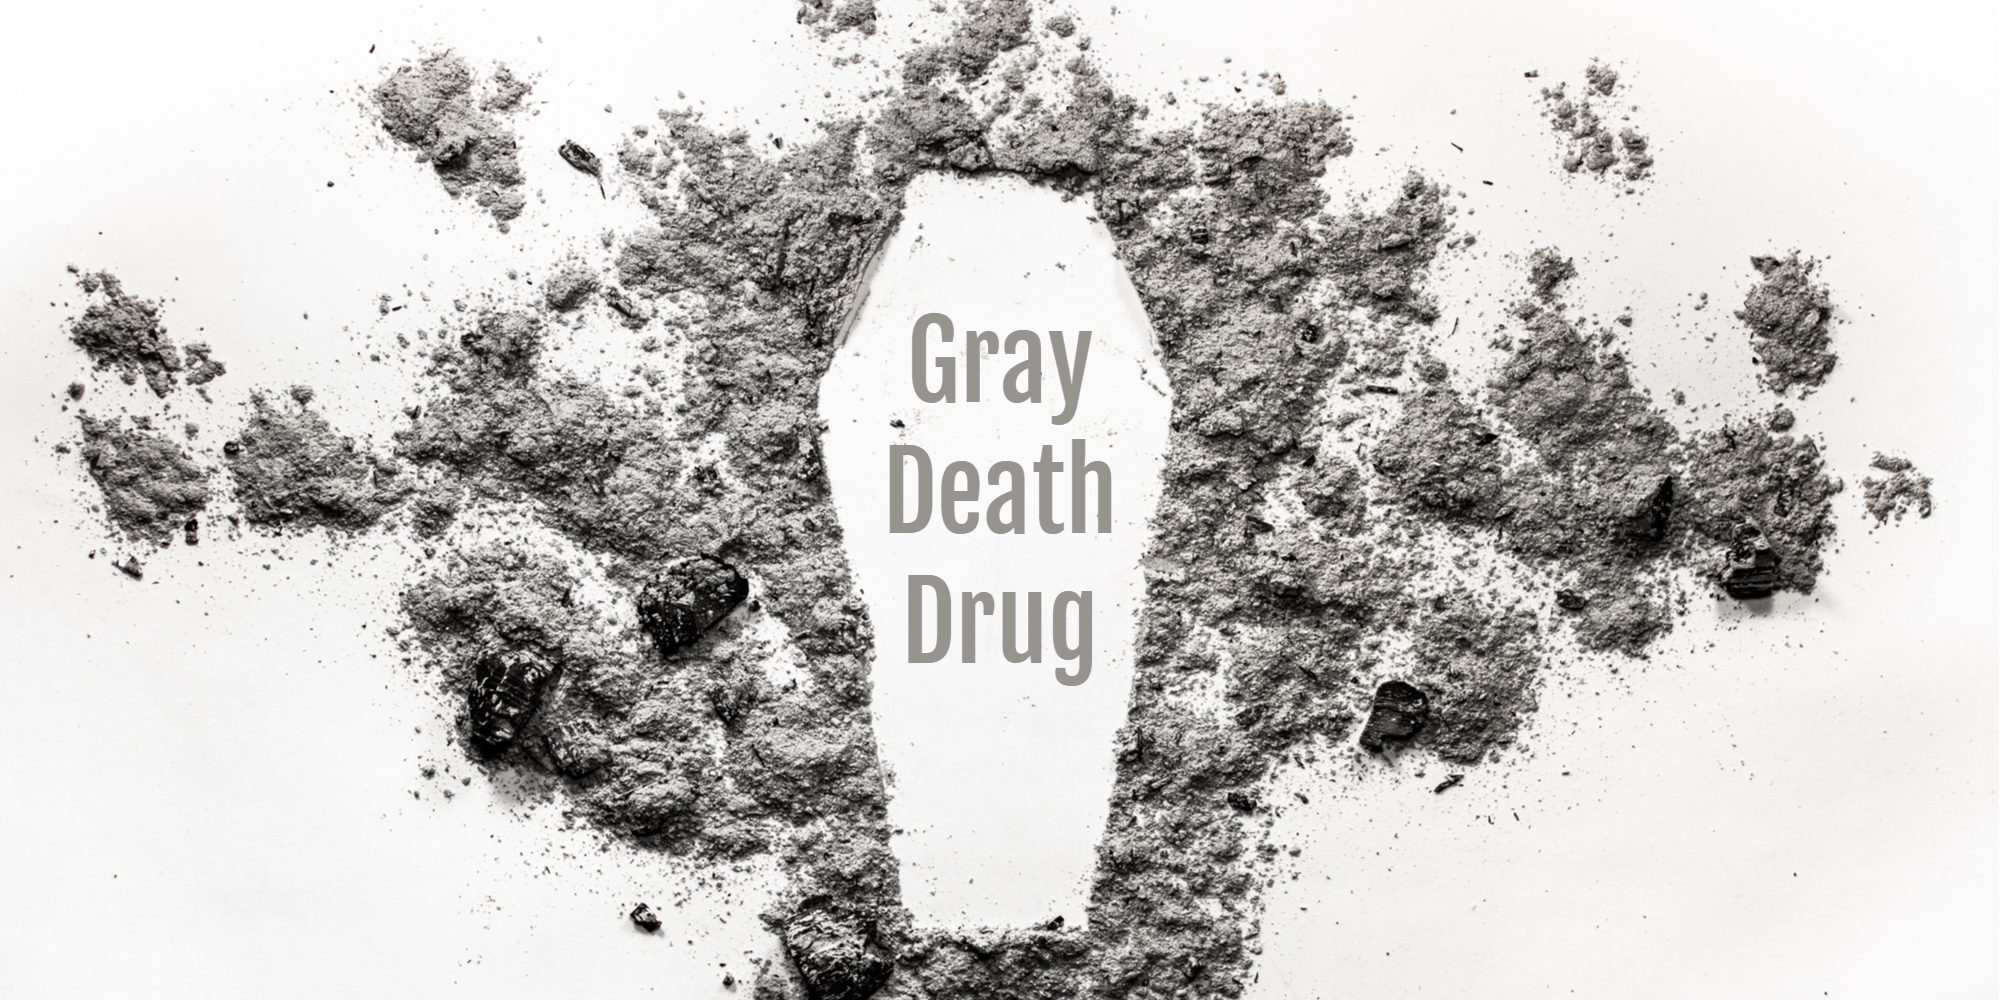 Gray Death Drug